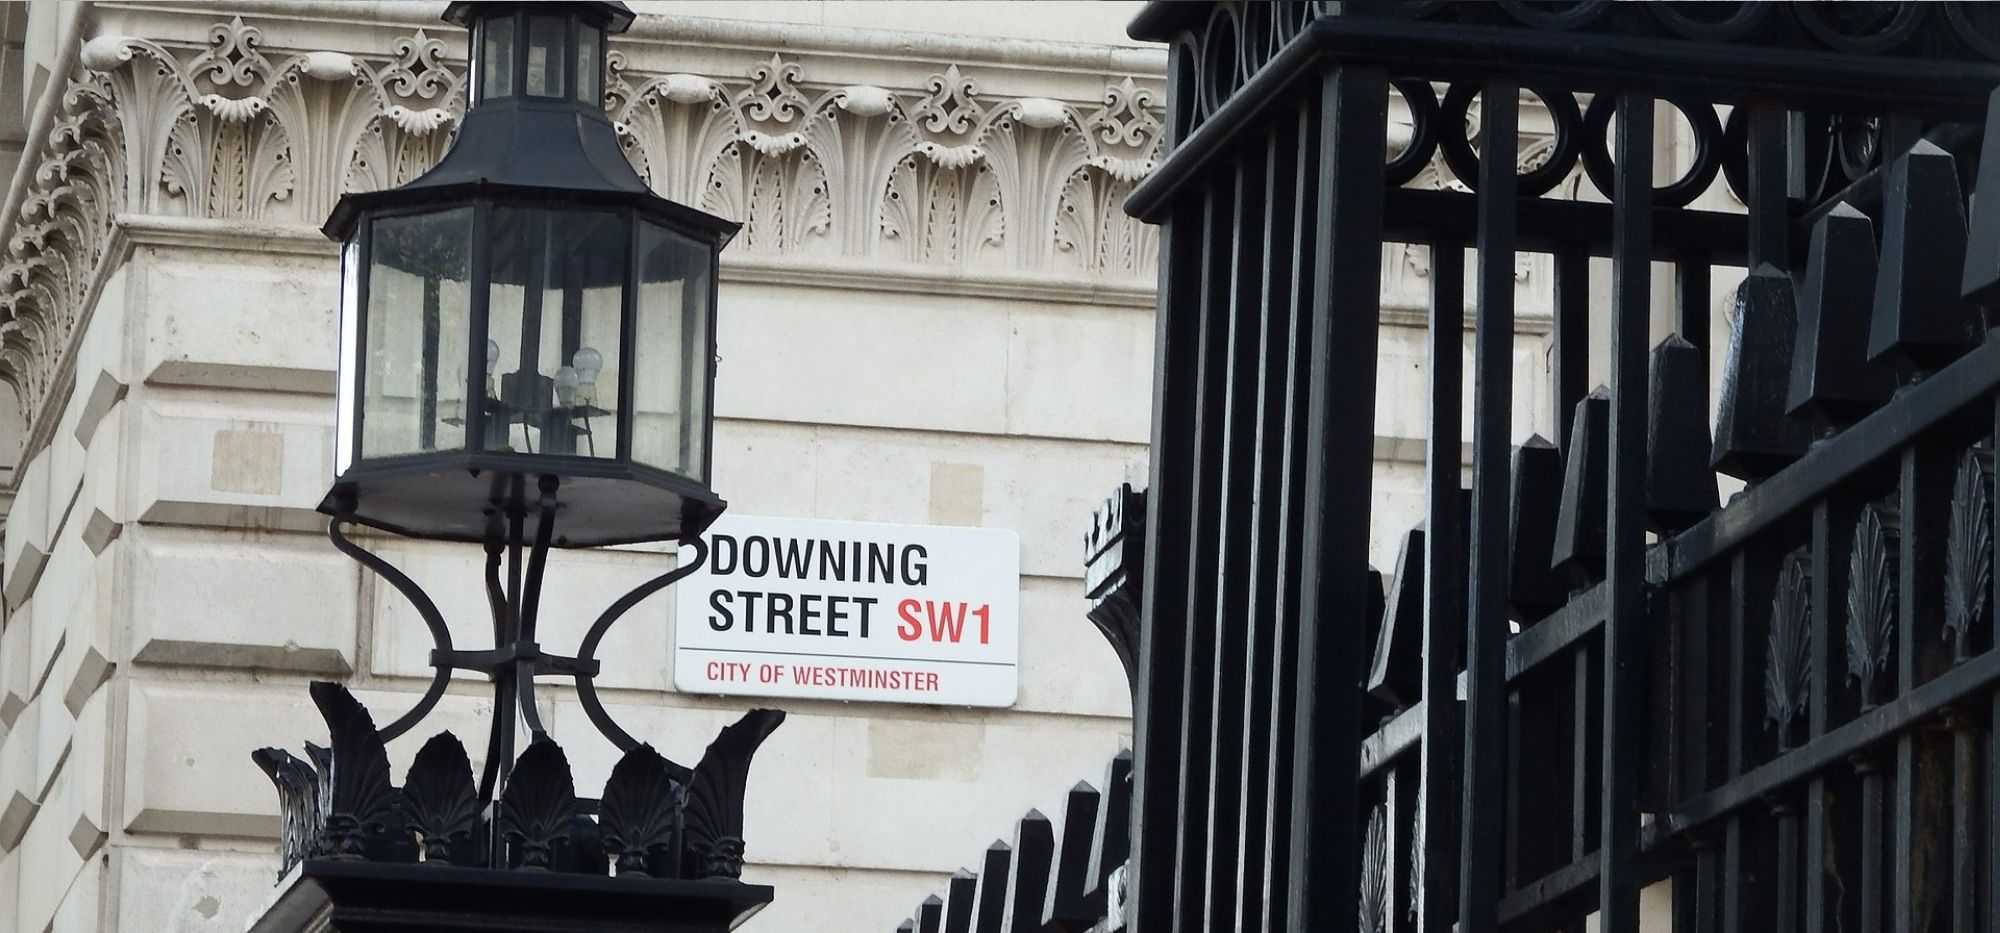 Downing Street - Najbardziej rozpoznawalne adresy w Londynie